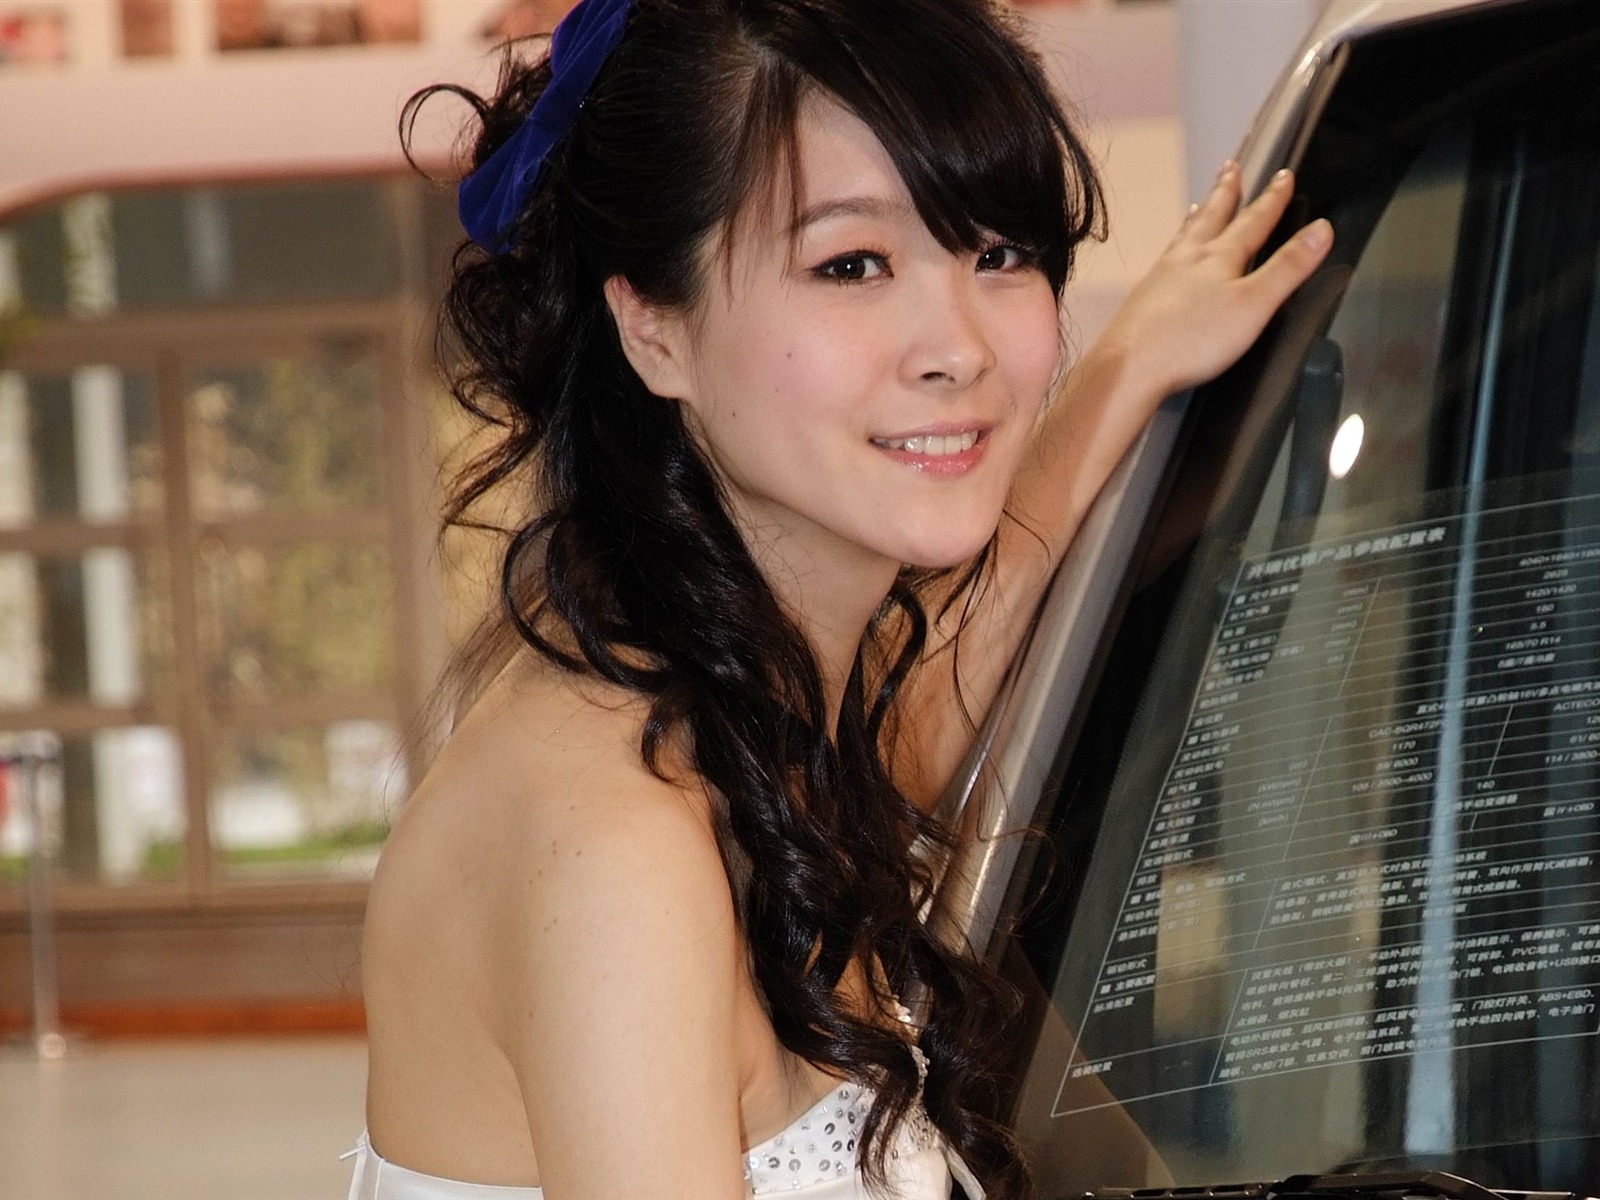 2010北京国际车展 美女车模 (螺纹钢作品)23 - 1600x1200